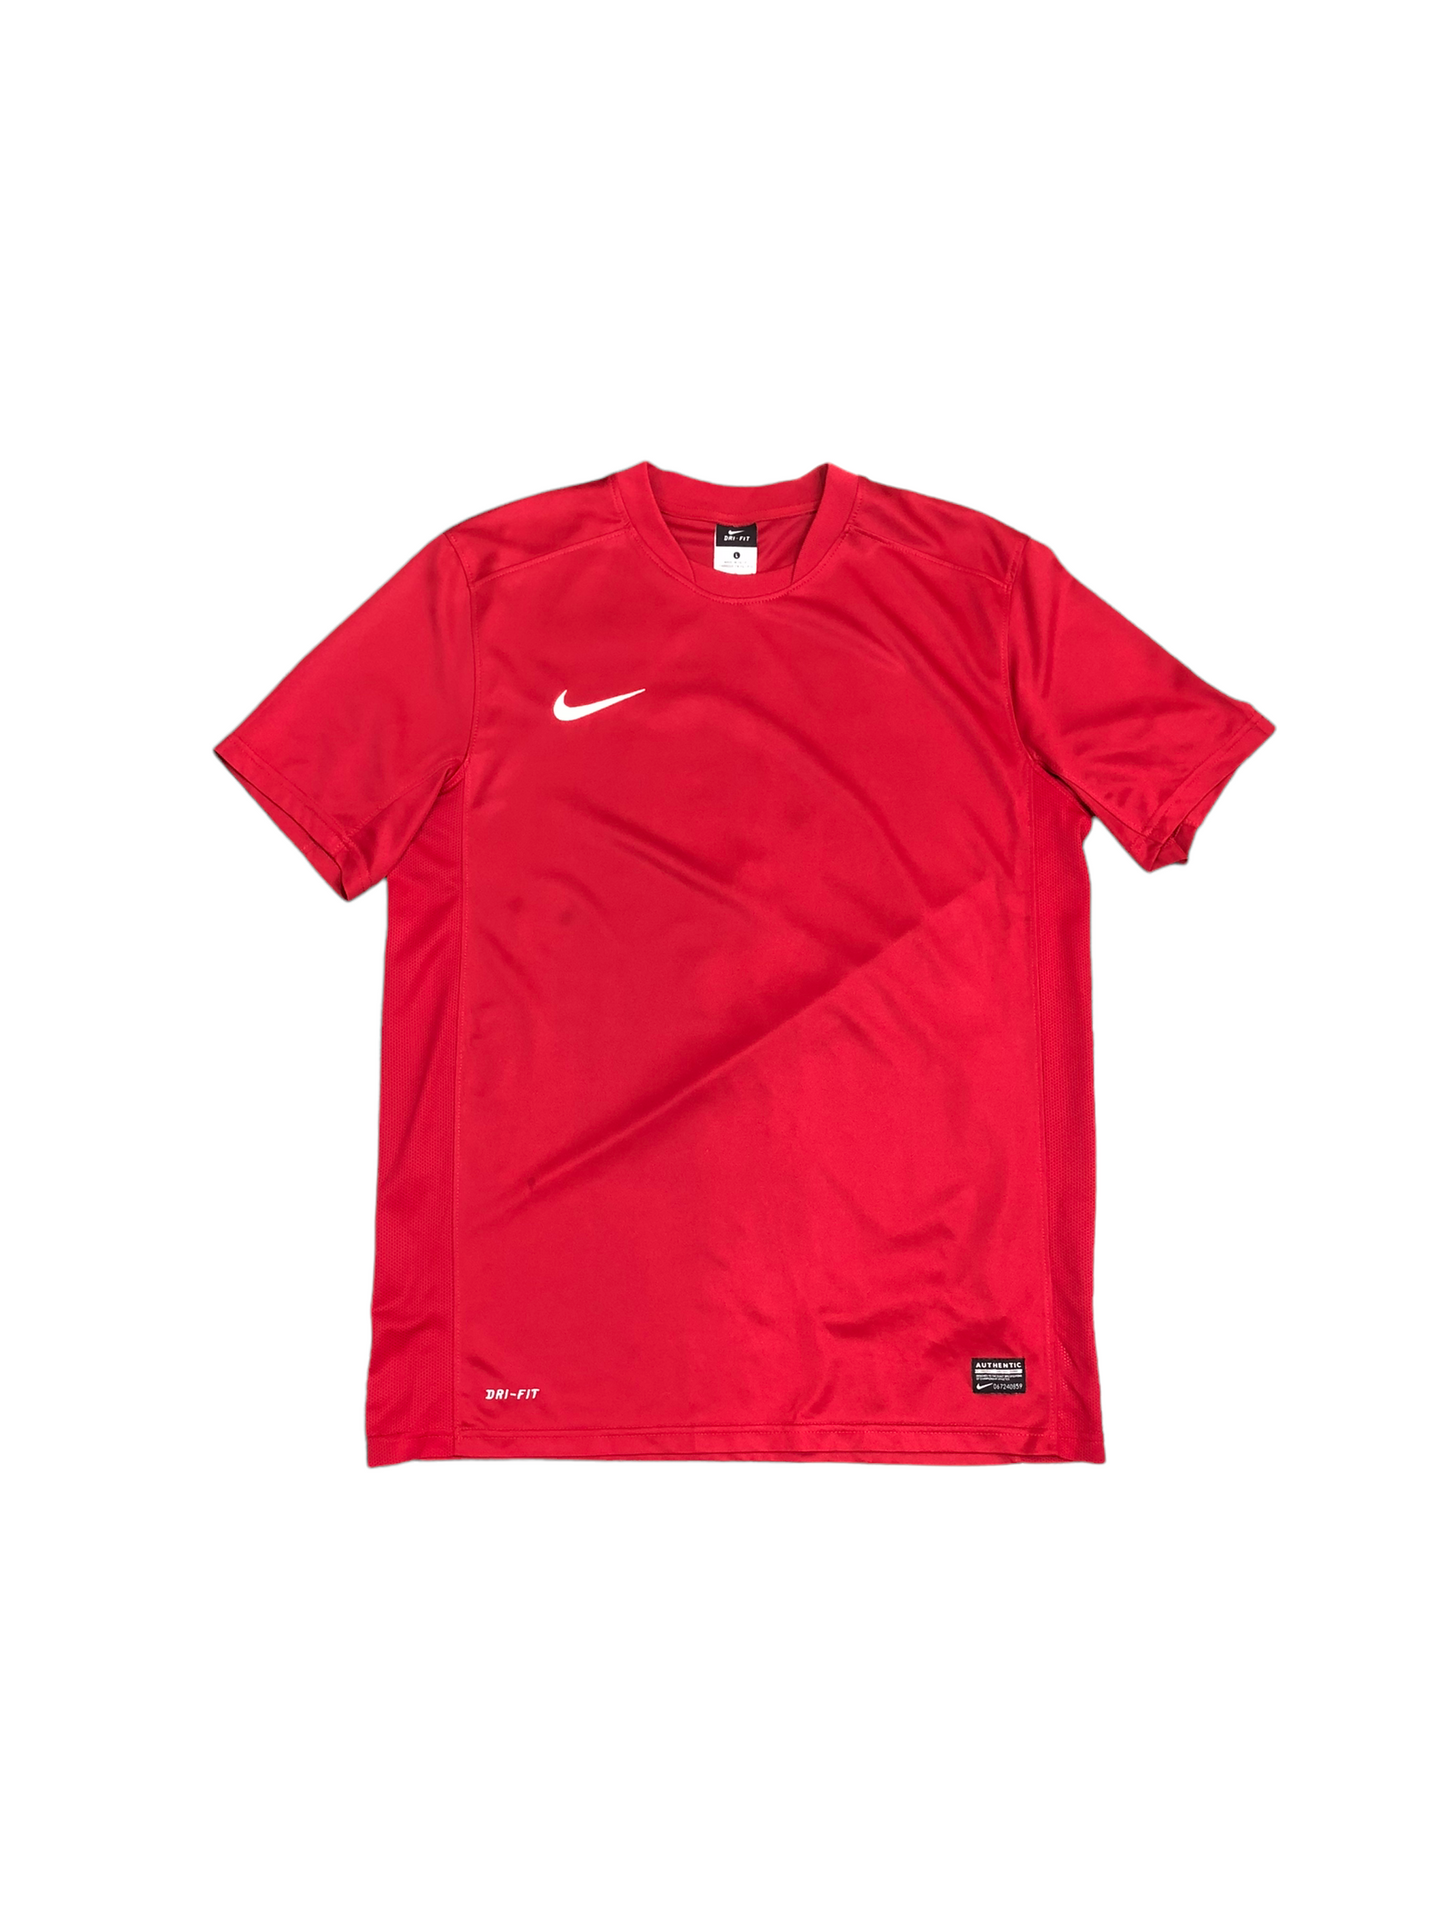 Mens Nike Dry Fit Sports T-Shirt - L